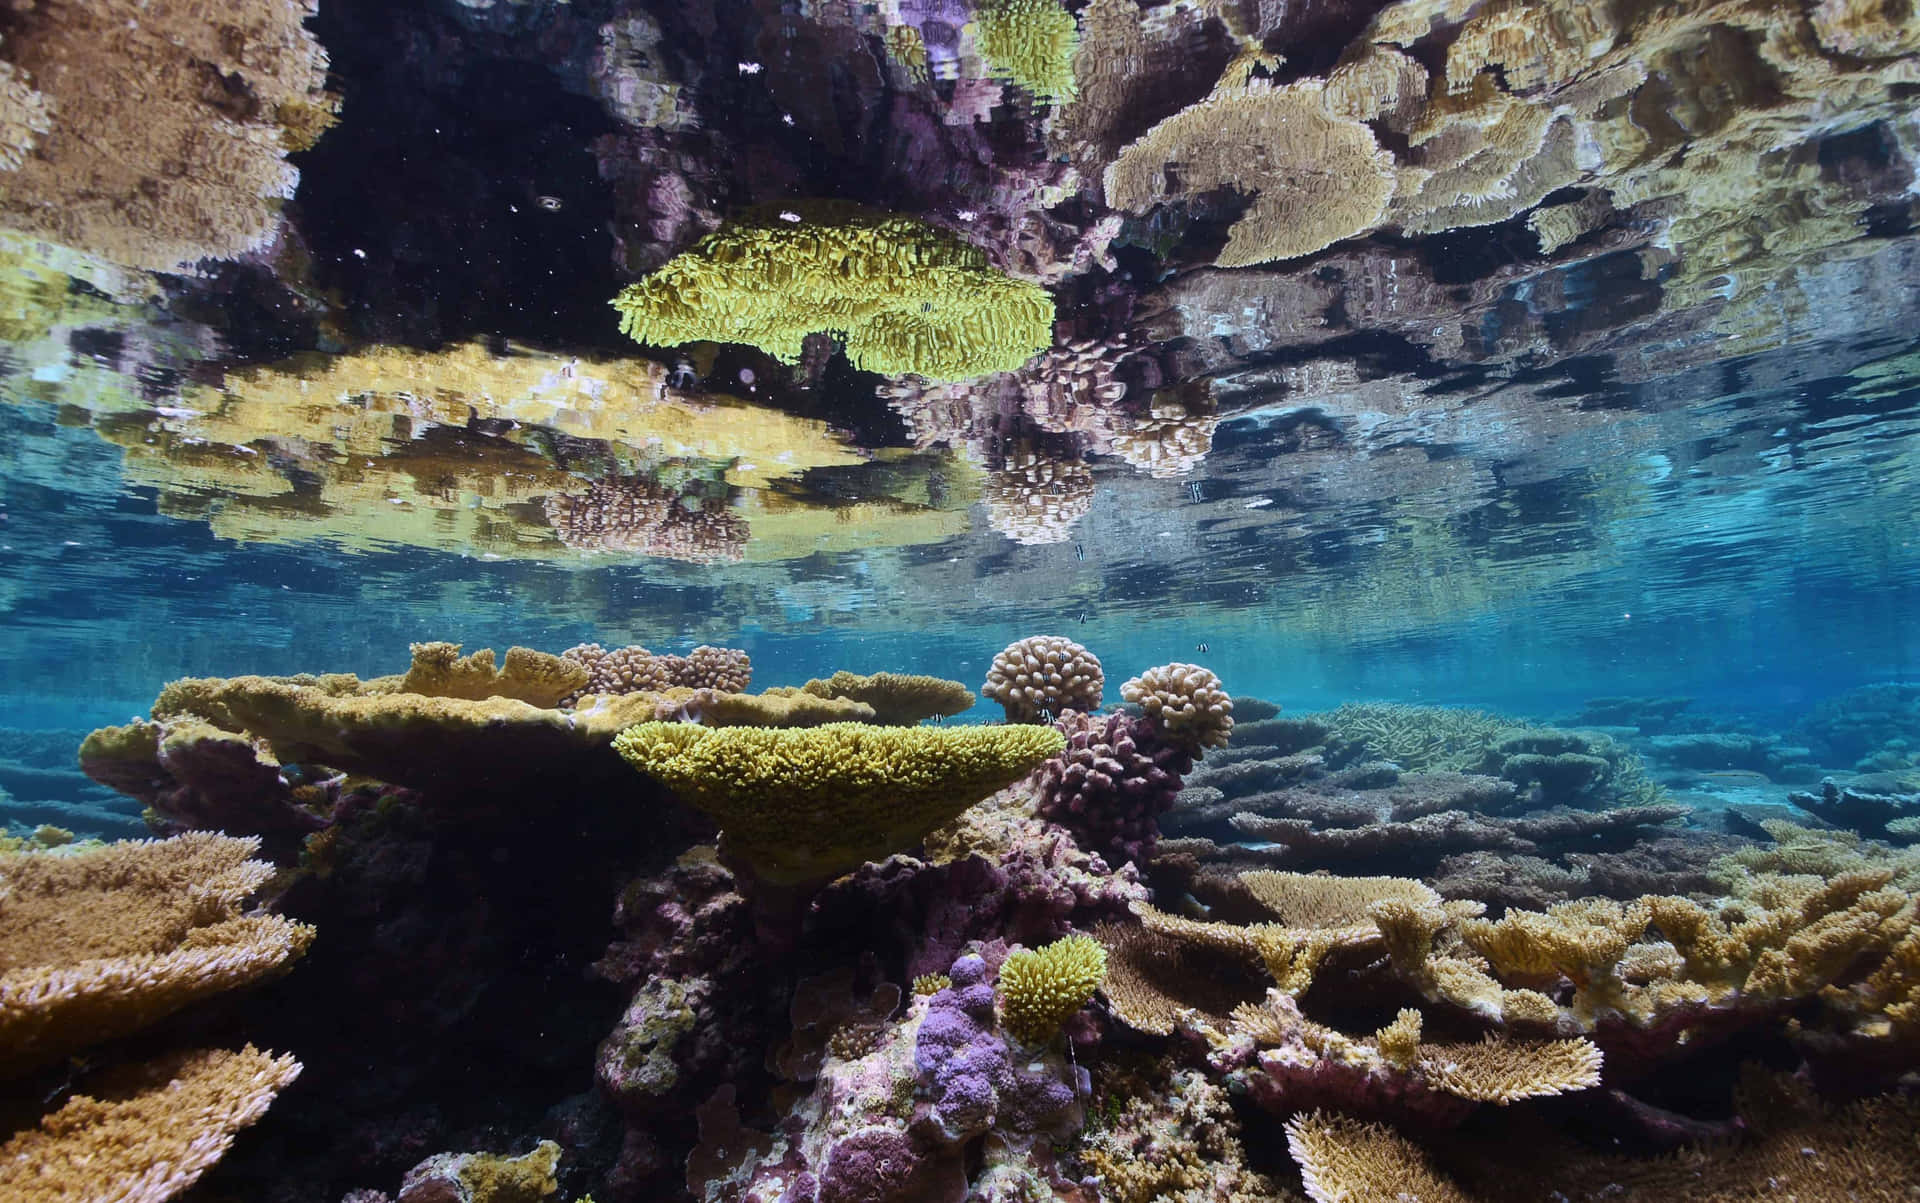 Experience a Peaceful Underwater Ocean